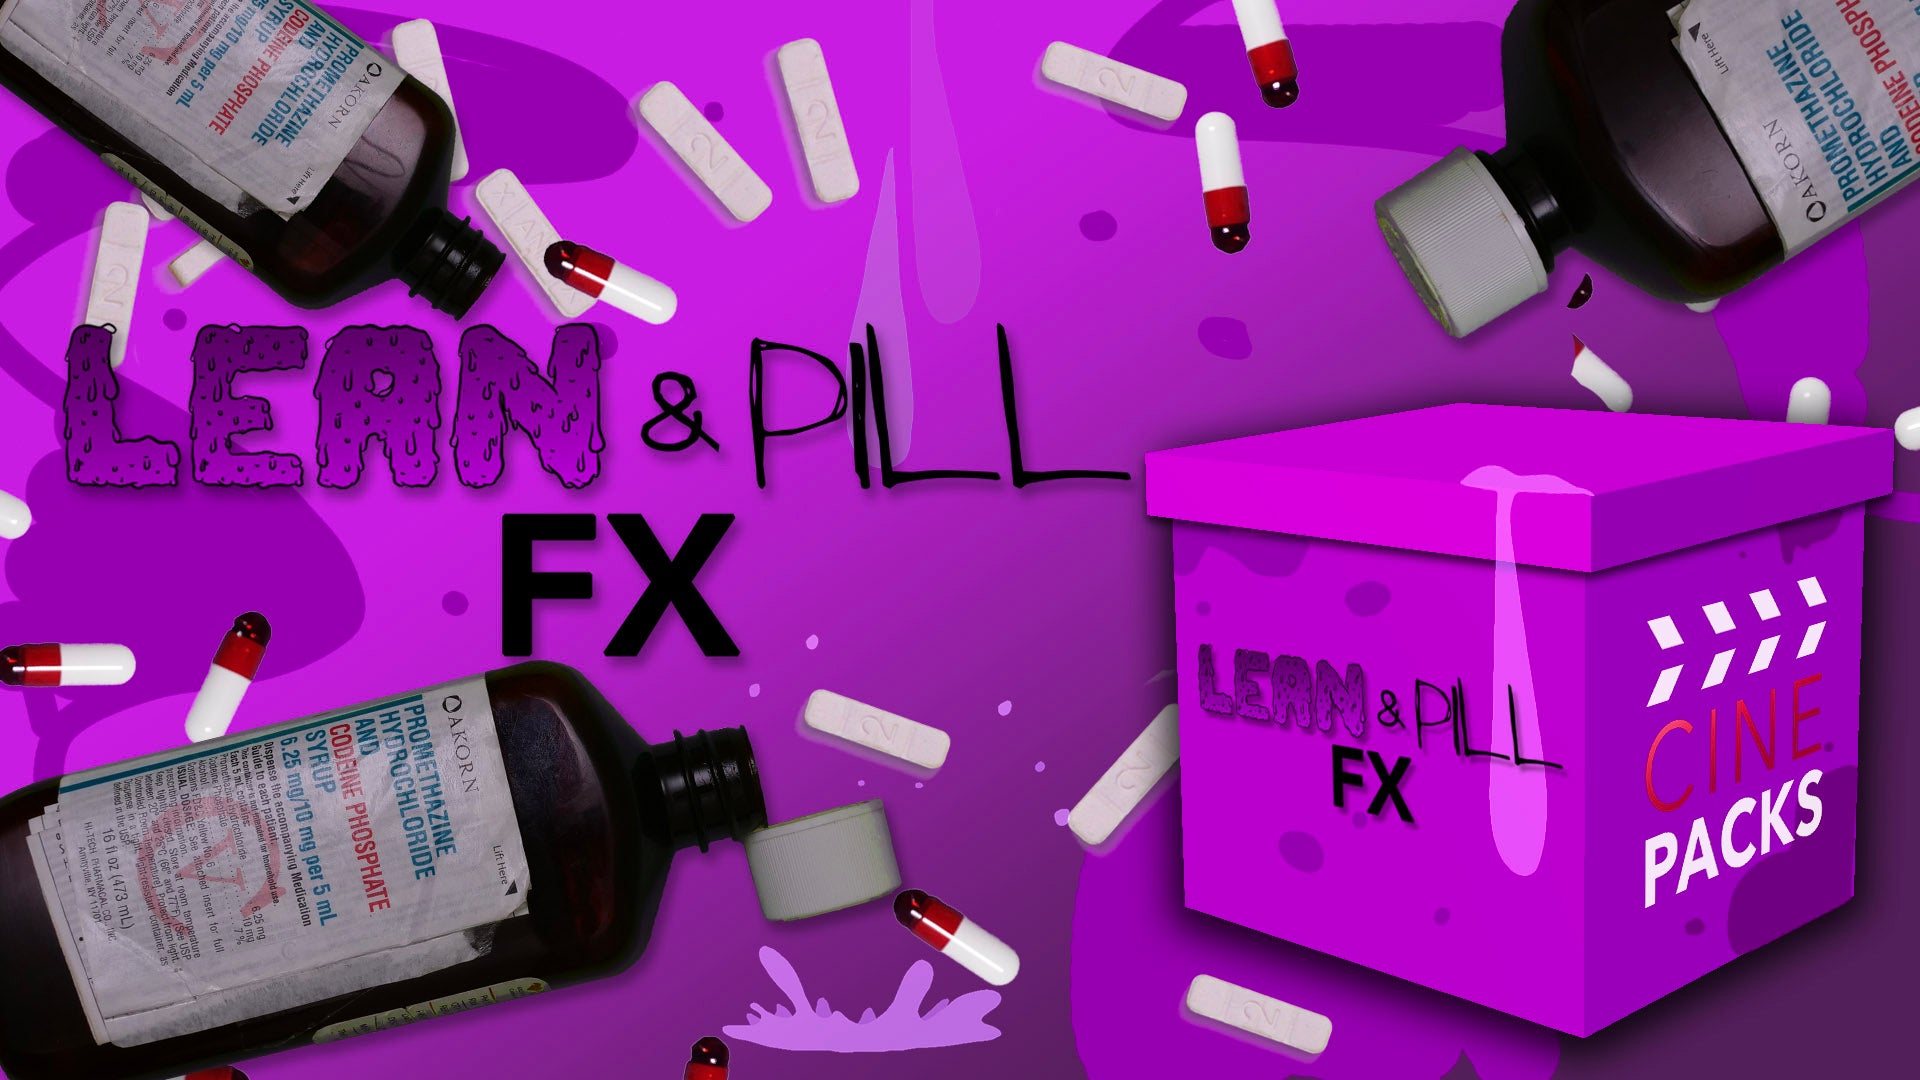 Lean & Pill FX - CinePacks